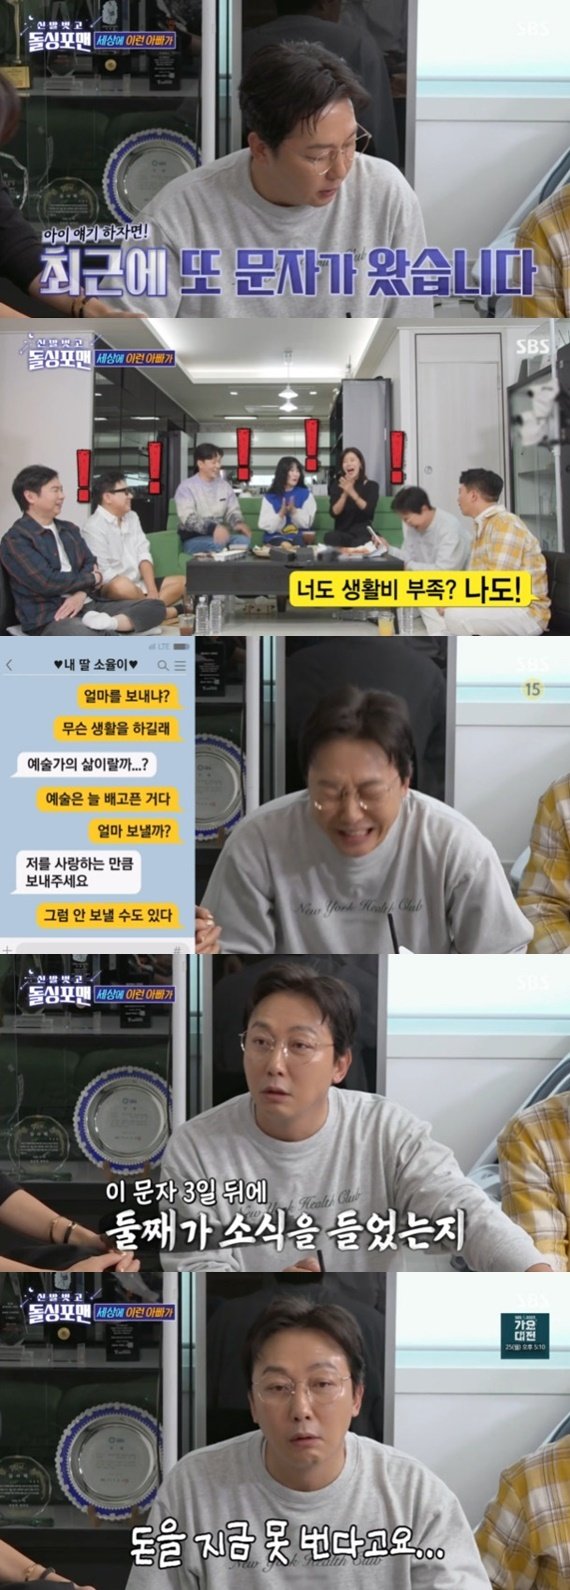 SBS ‘신발 벗고 돌싱포맨’ 캡처